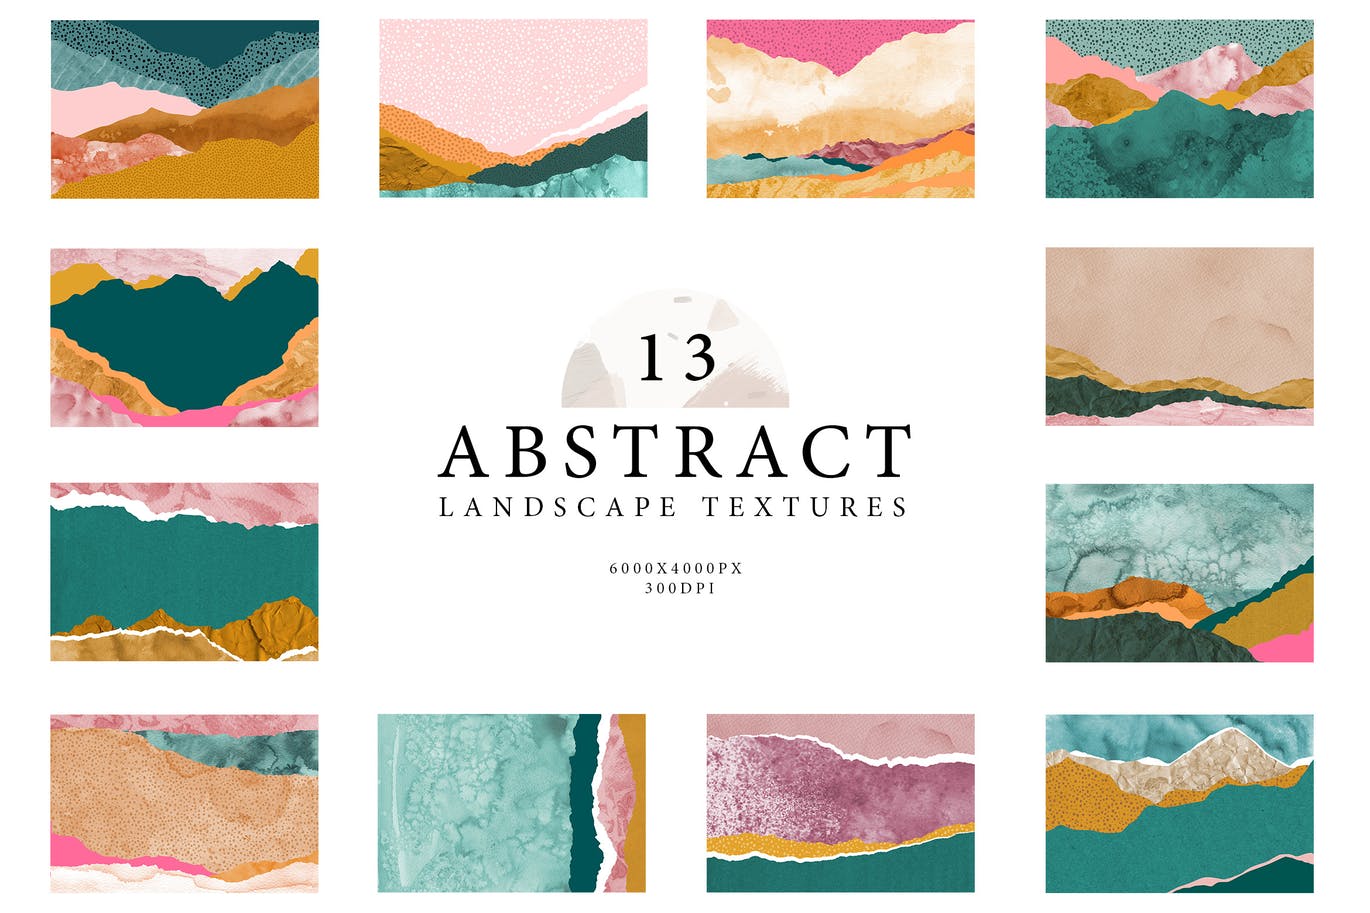 抽象海蓝色粉红色风景水彩纸垃圾撕裂纸张纹理合集 Abstra